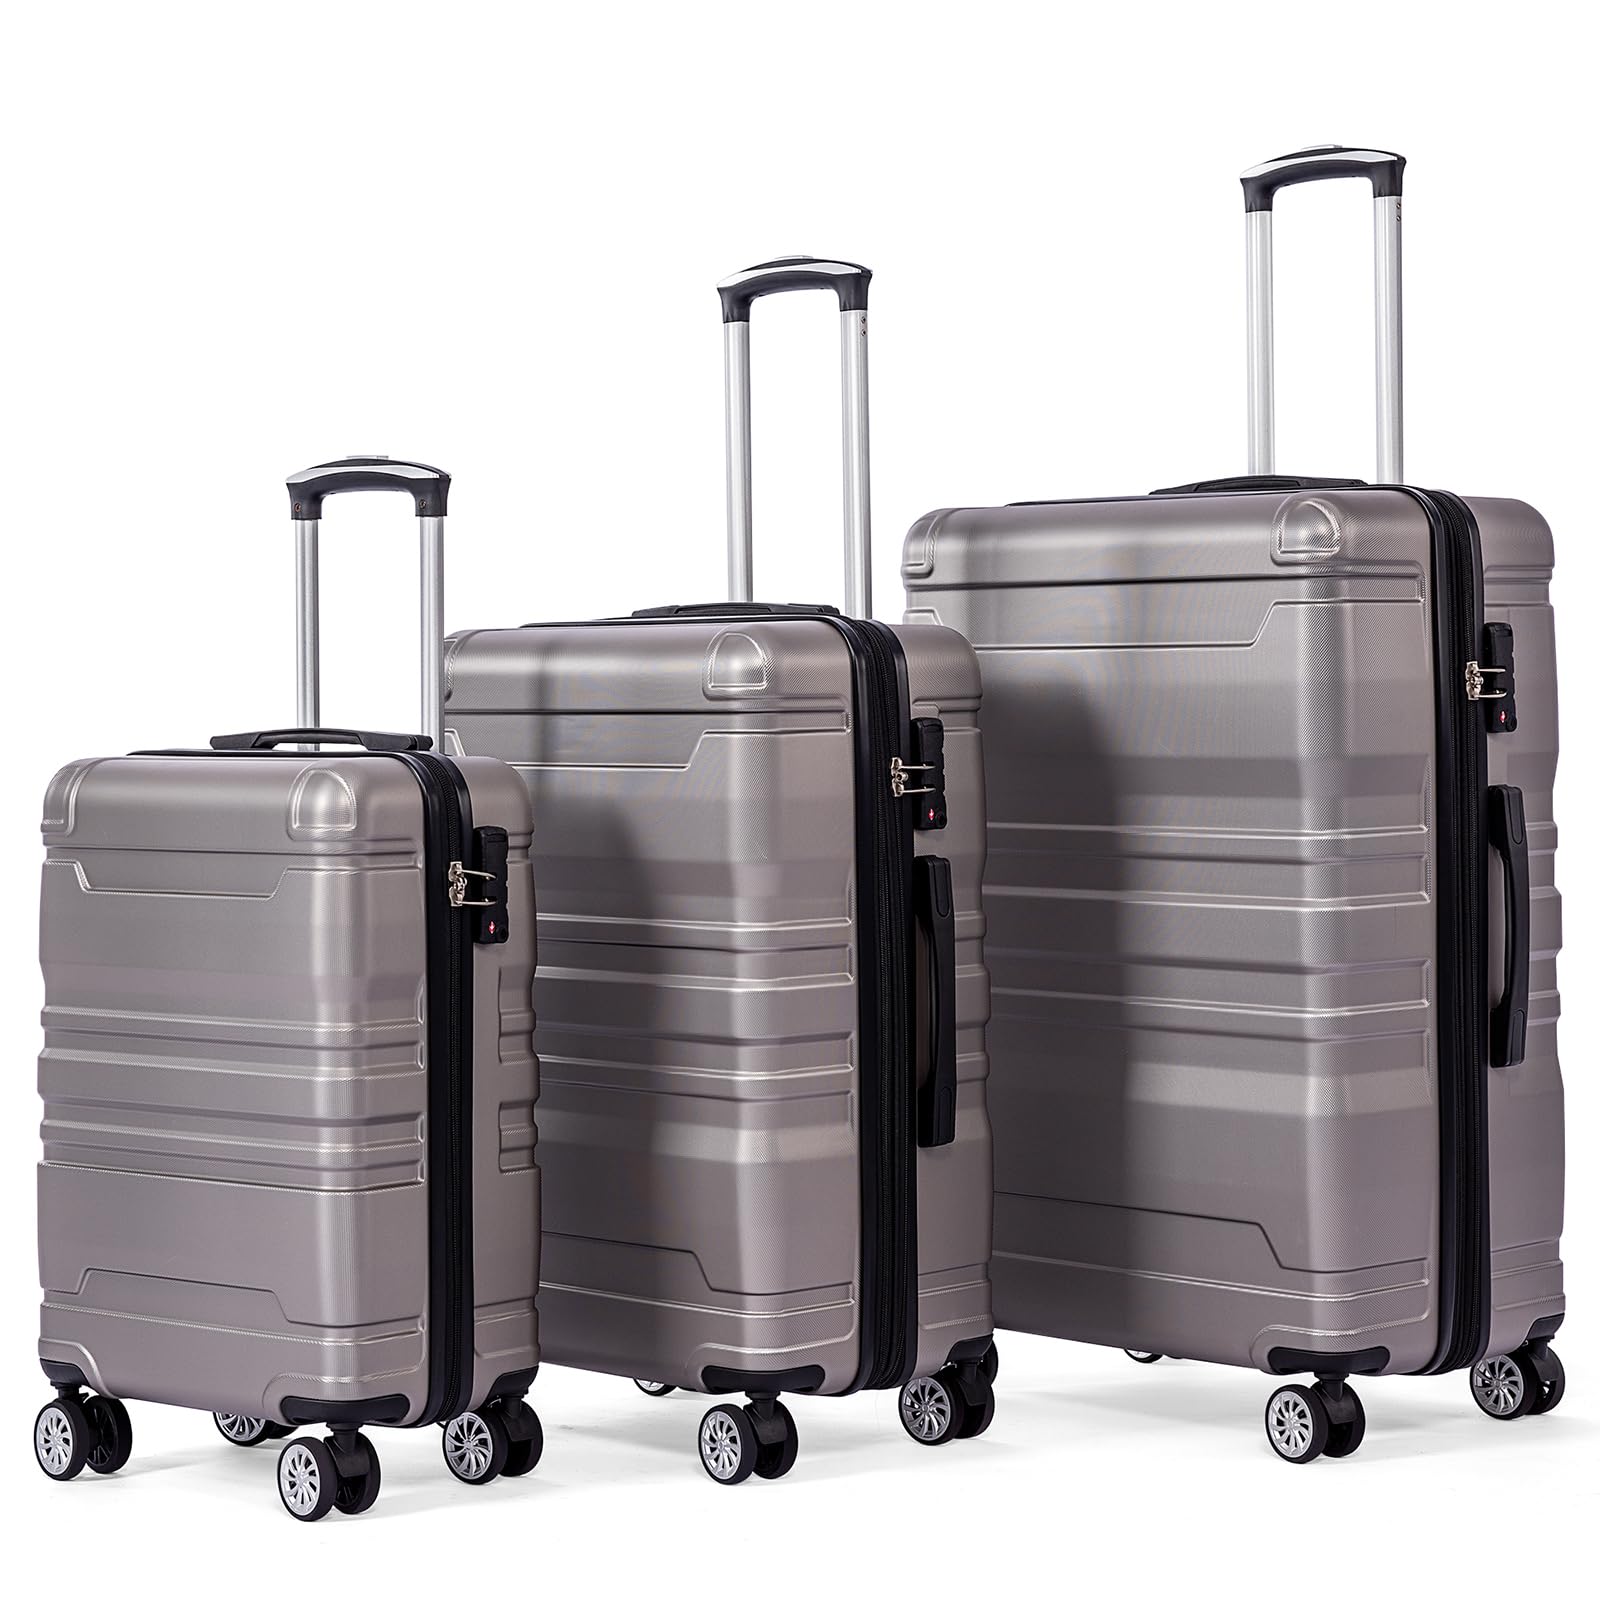 Transplant Kofferset 3-teilig Hartschale, Koffer Set Hartschalenkoffer, Koffer Set 3 Stück mit TSA-Schloss und Universalrad, Erweiterbar Luggage Sets, Seitengriff Reisekoffer Set (Grau)